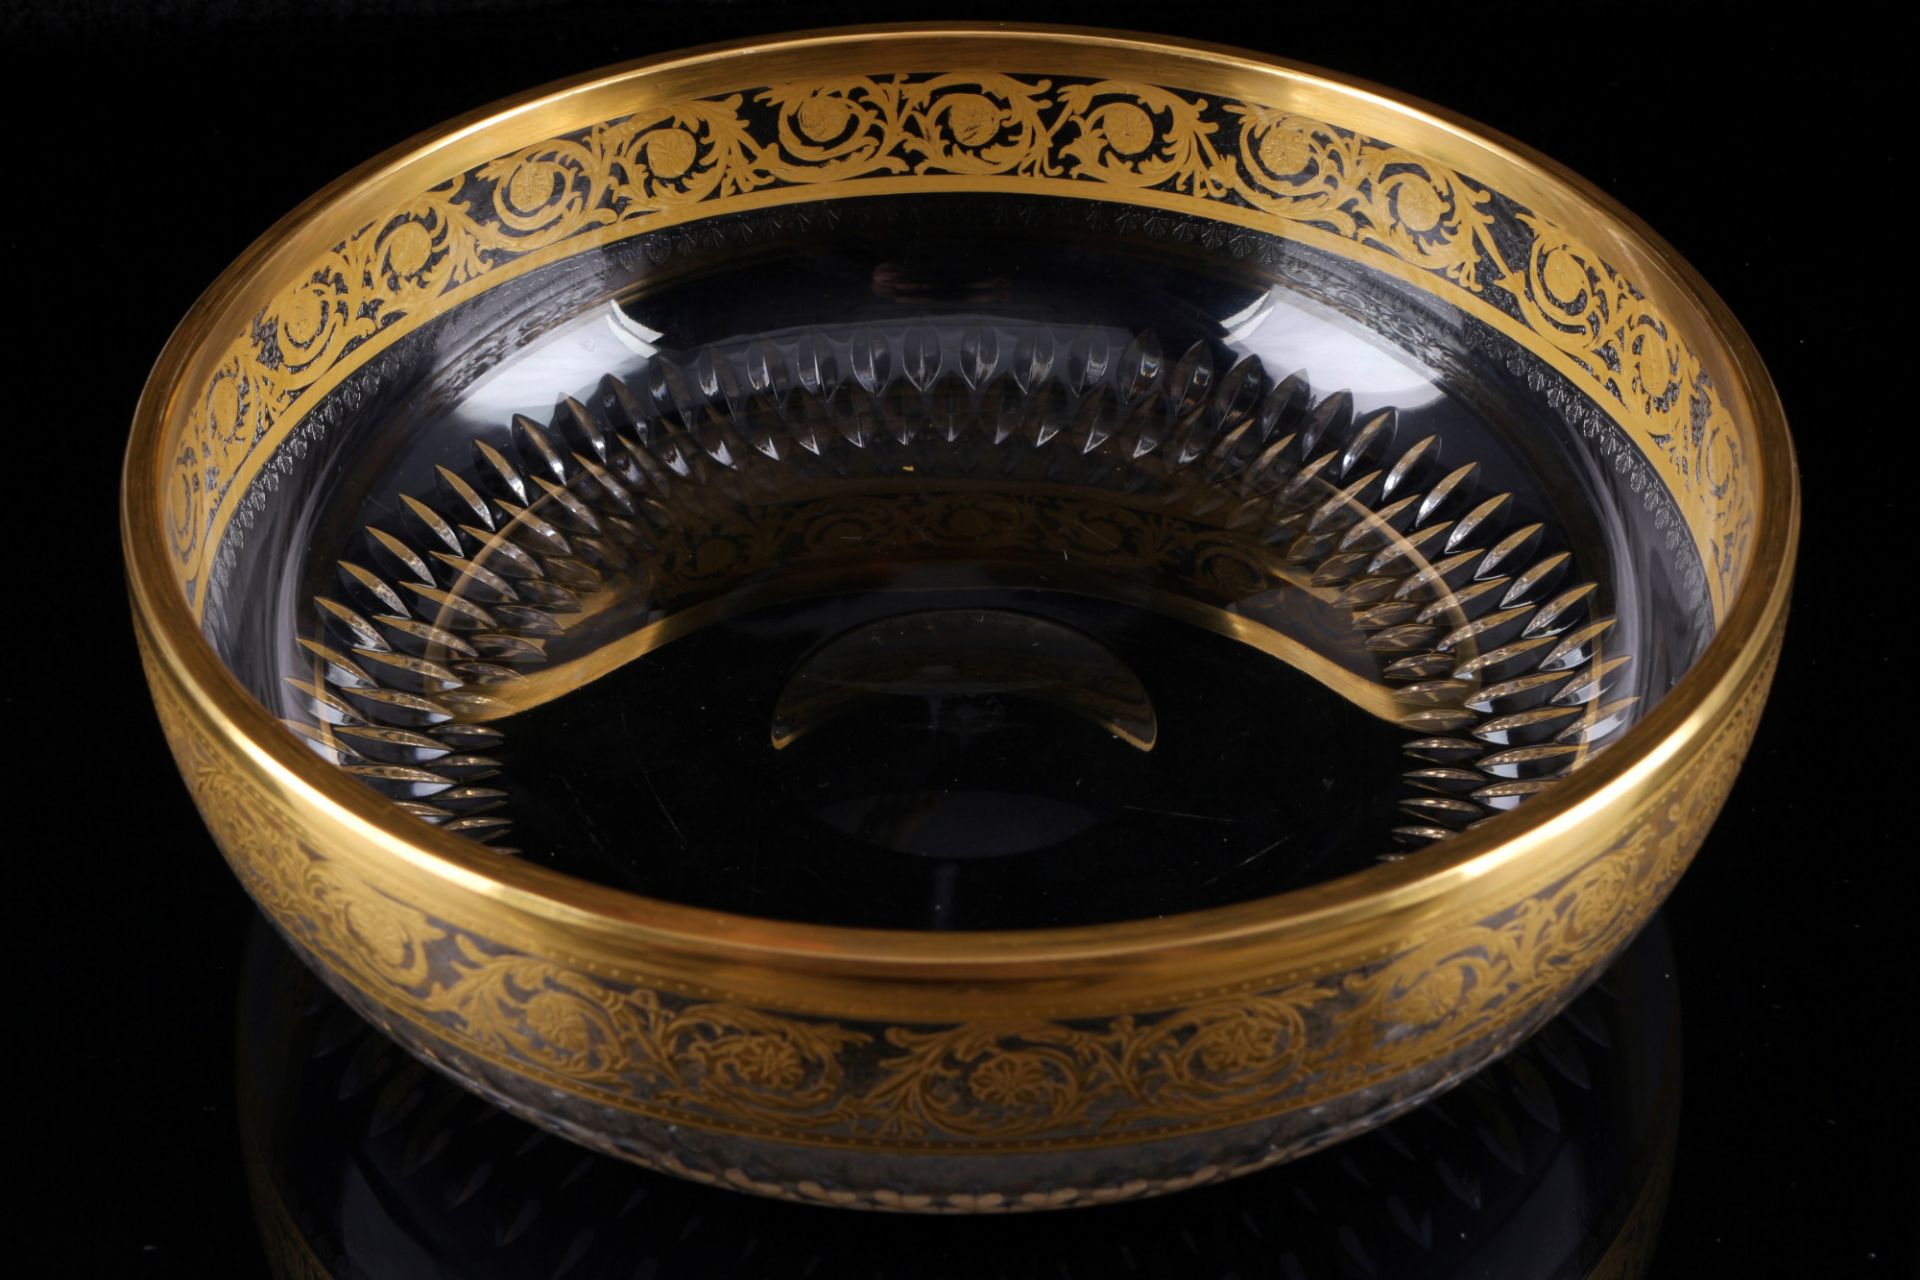 St. Louis Thistle Gold große Schale, large bowl, - Bild 2 aus 3